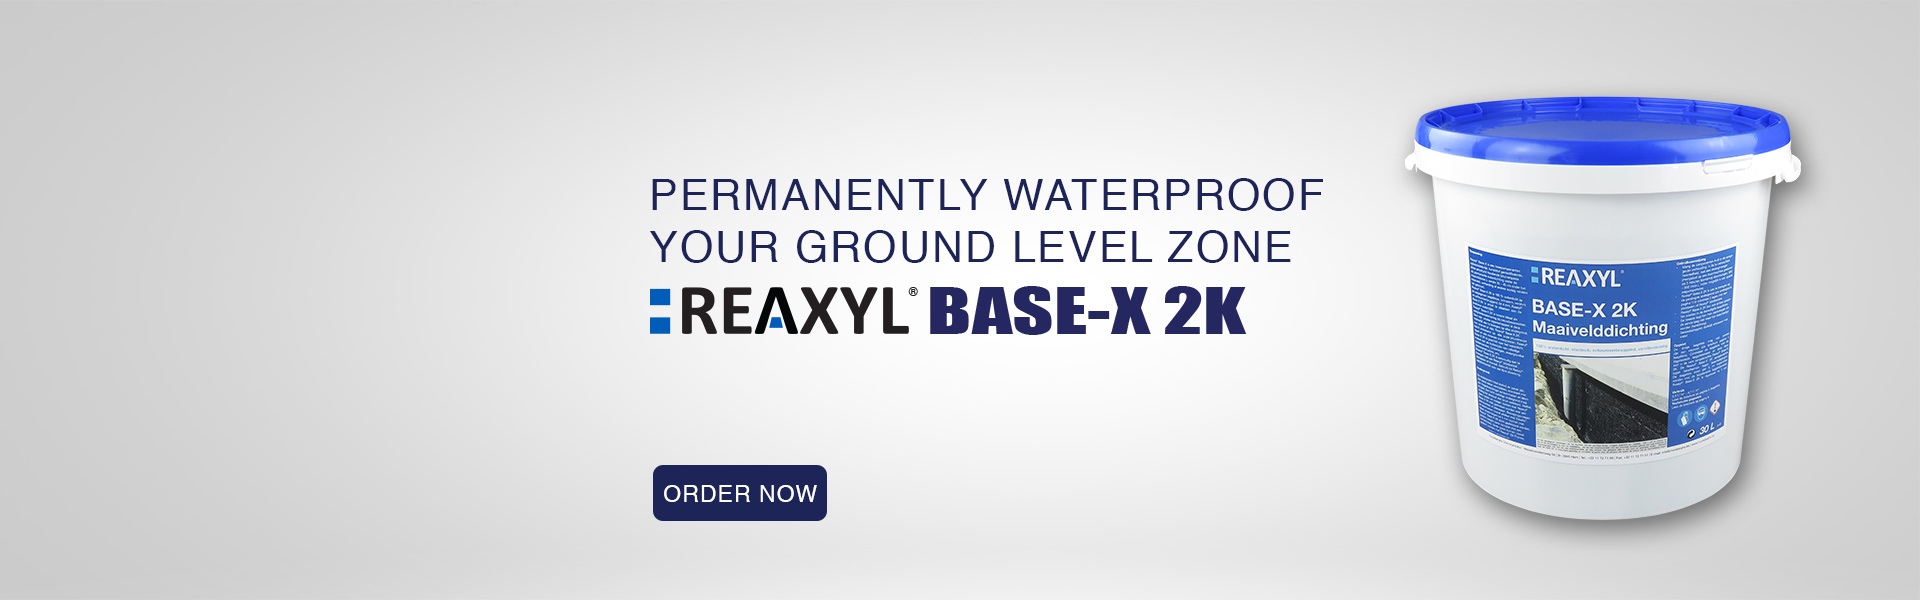 Reaxyl Base-X 2K